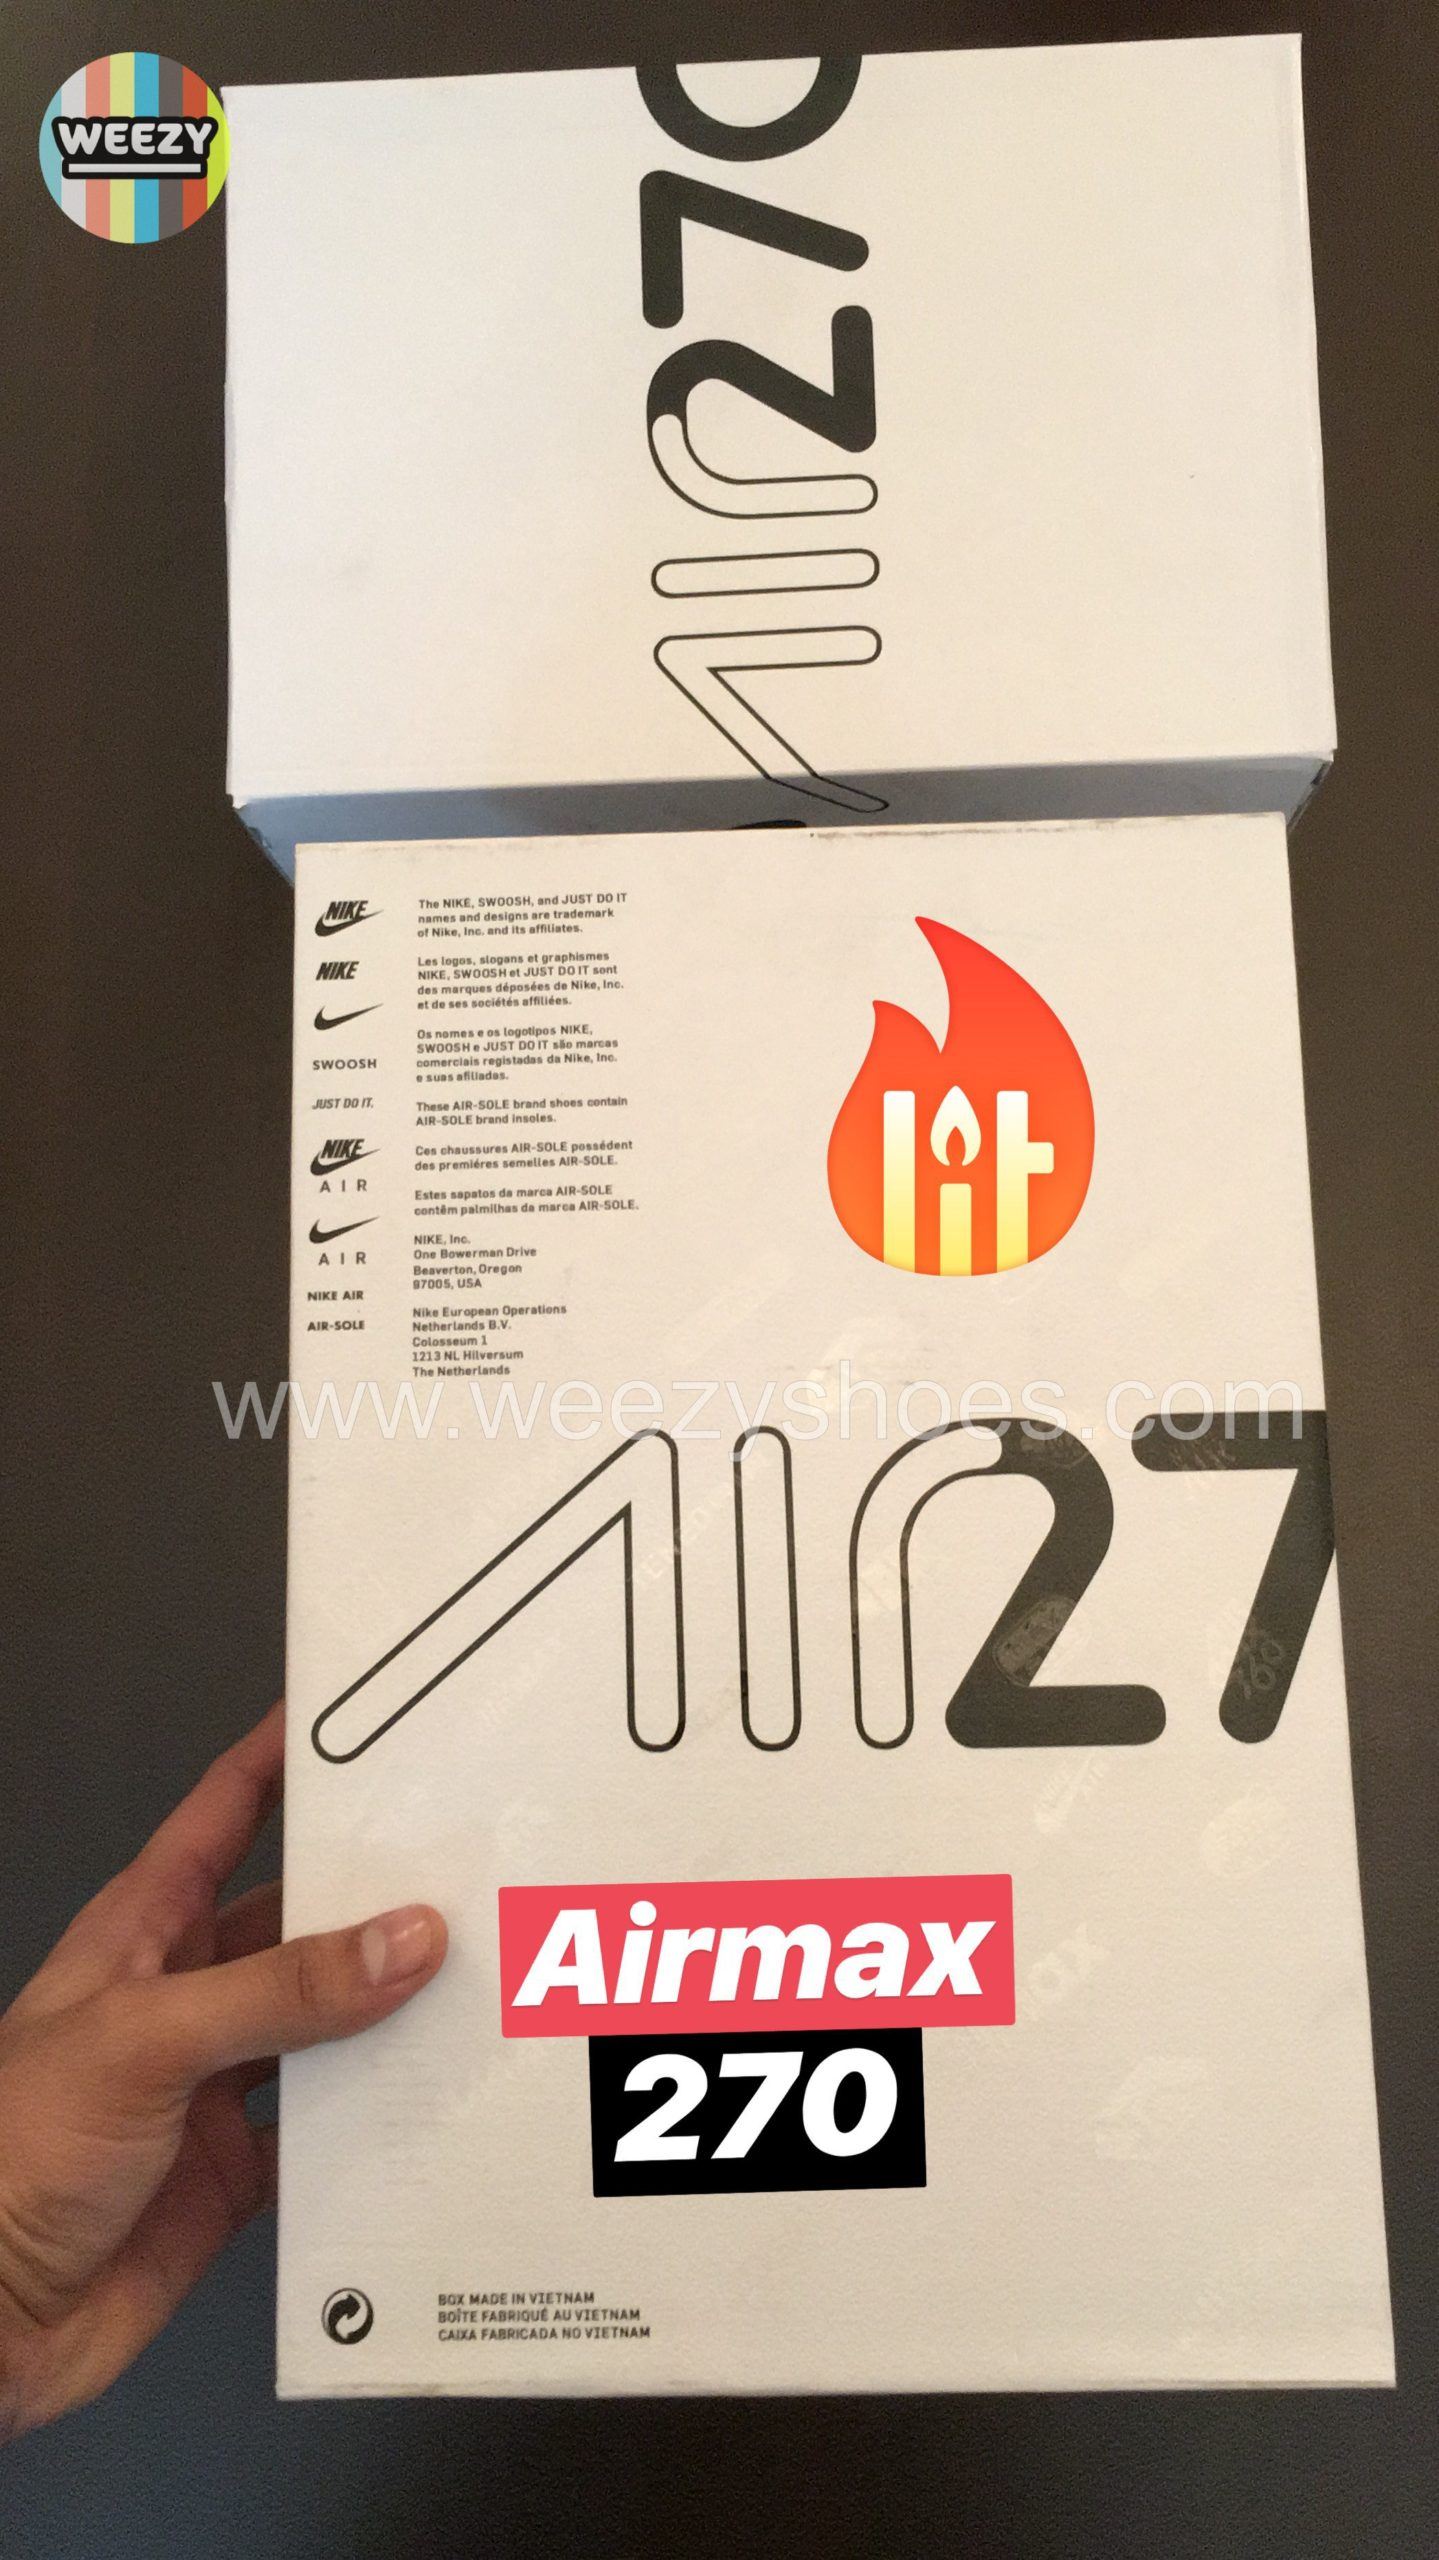 Airmax Air max 270 (B/W)